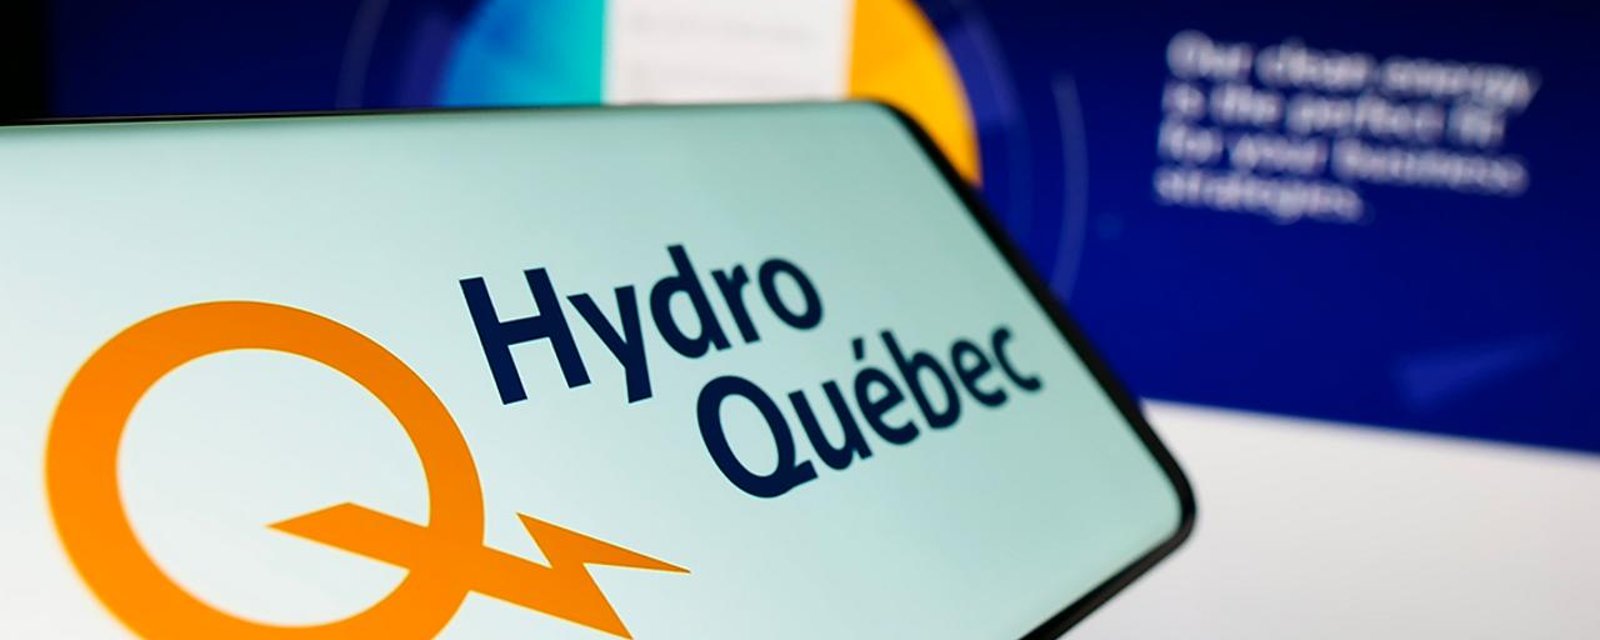 Environ 150 000 clients d'Hydro-Québec privés d'électricité en ce moment